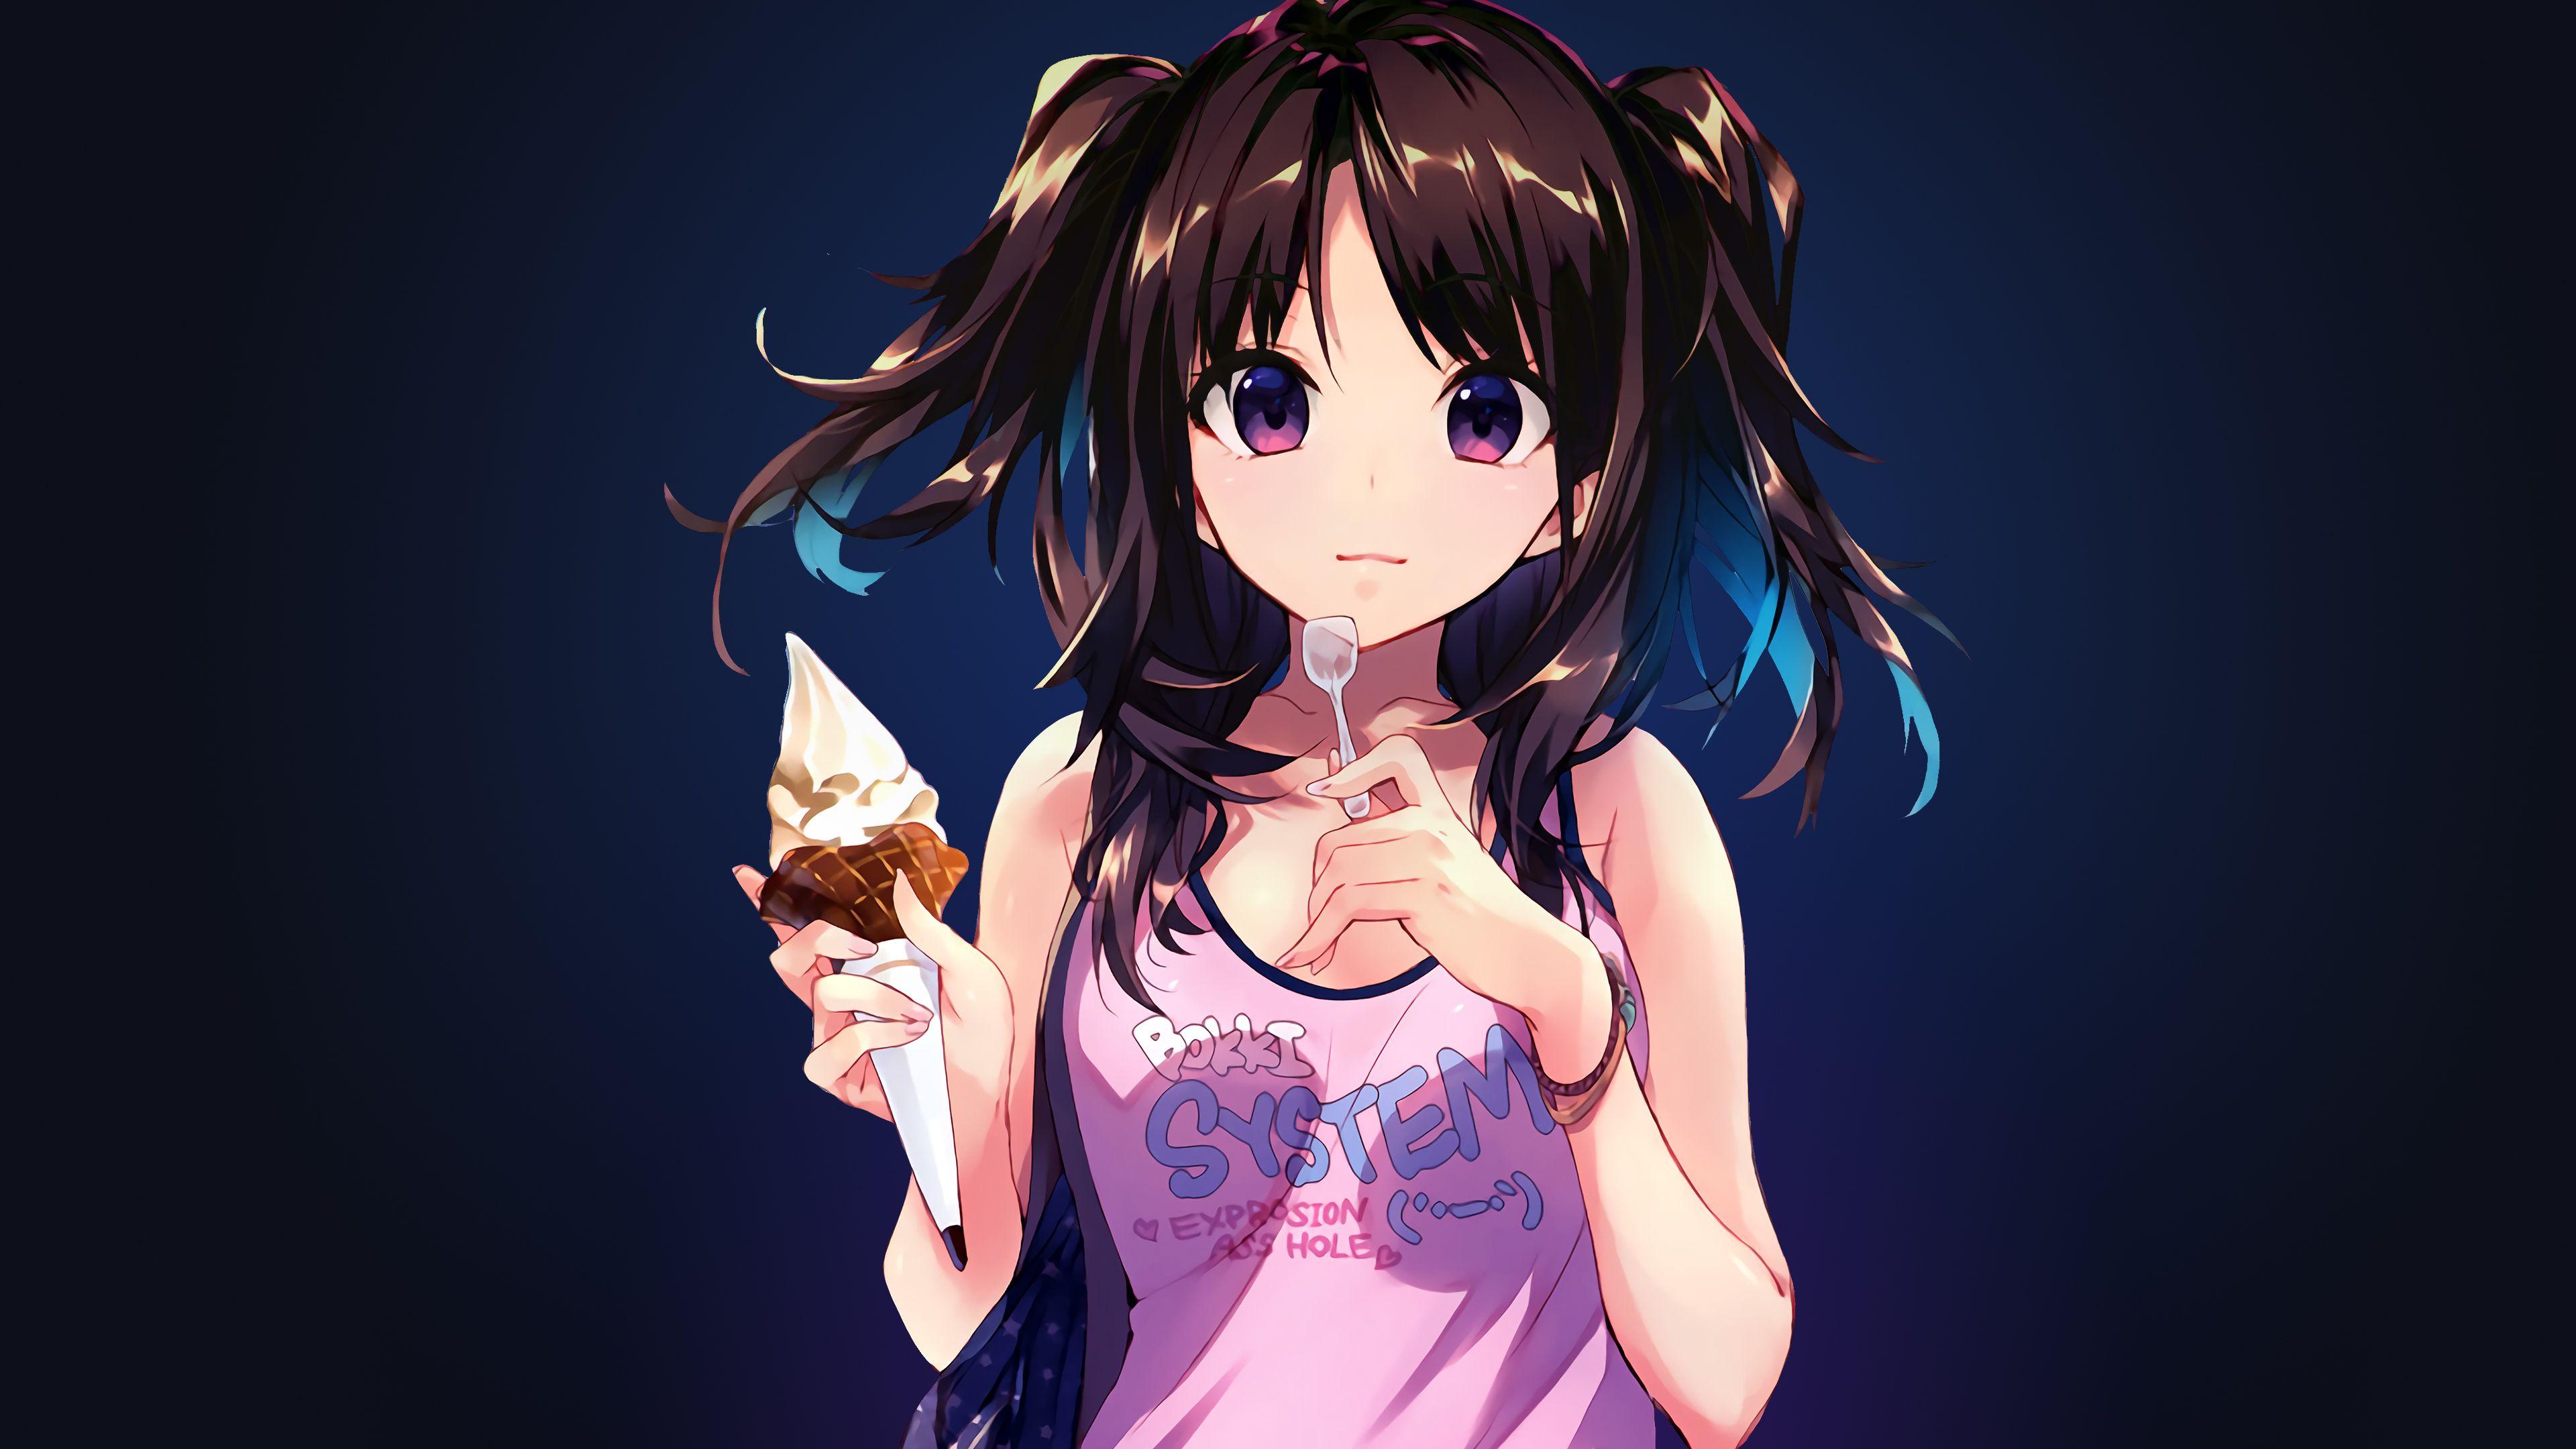 Wallpaper Anime girl, Ice cream, Desert, 4K, Anime